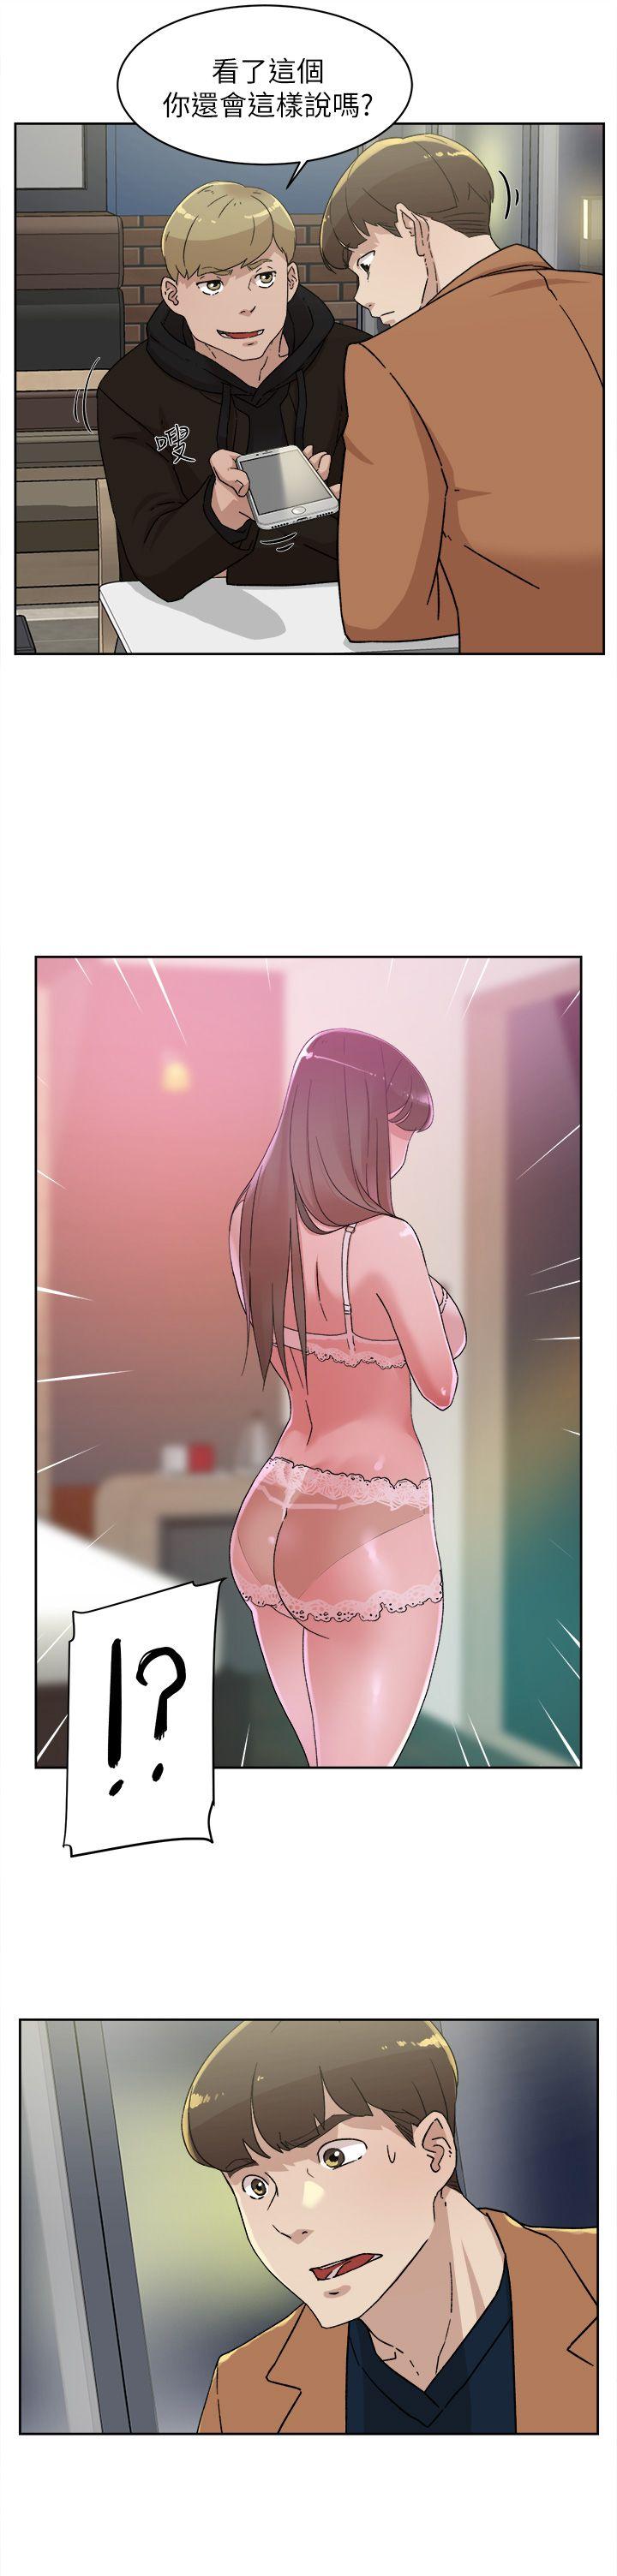 韩国污漫画 她的高跟鞋(無刪減) 第76话-昨晚发生的事 31